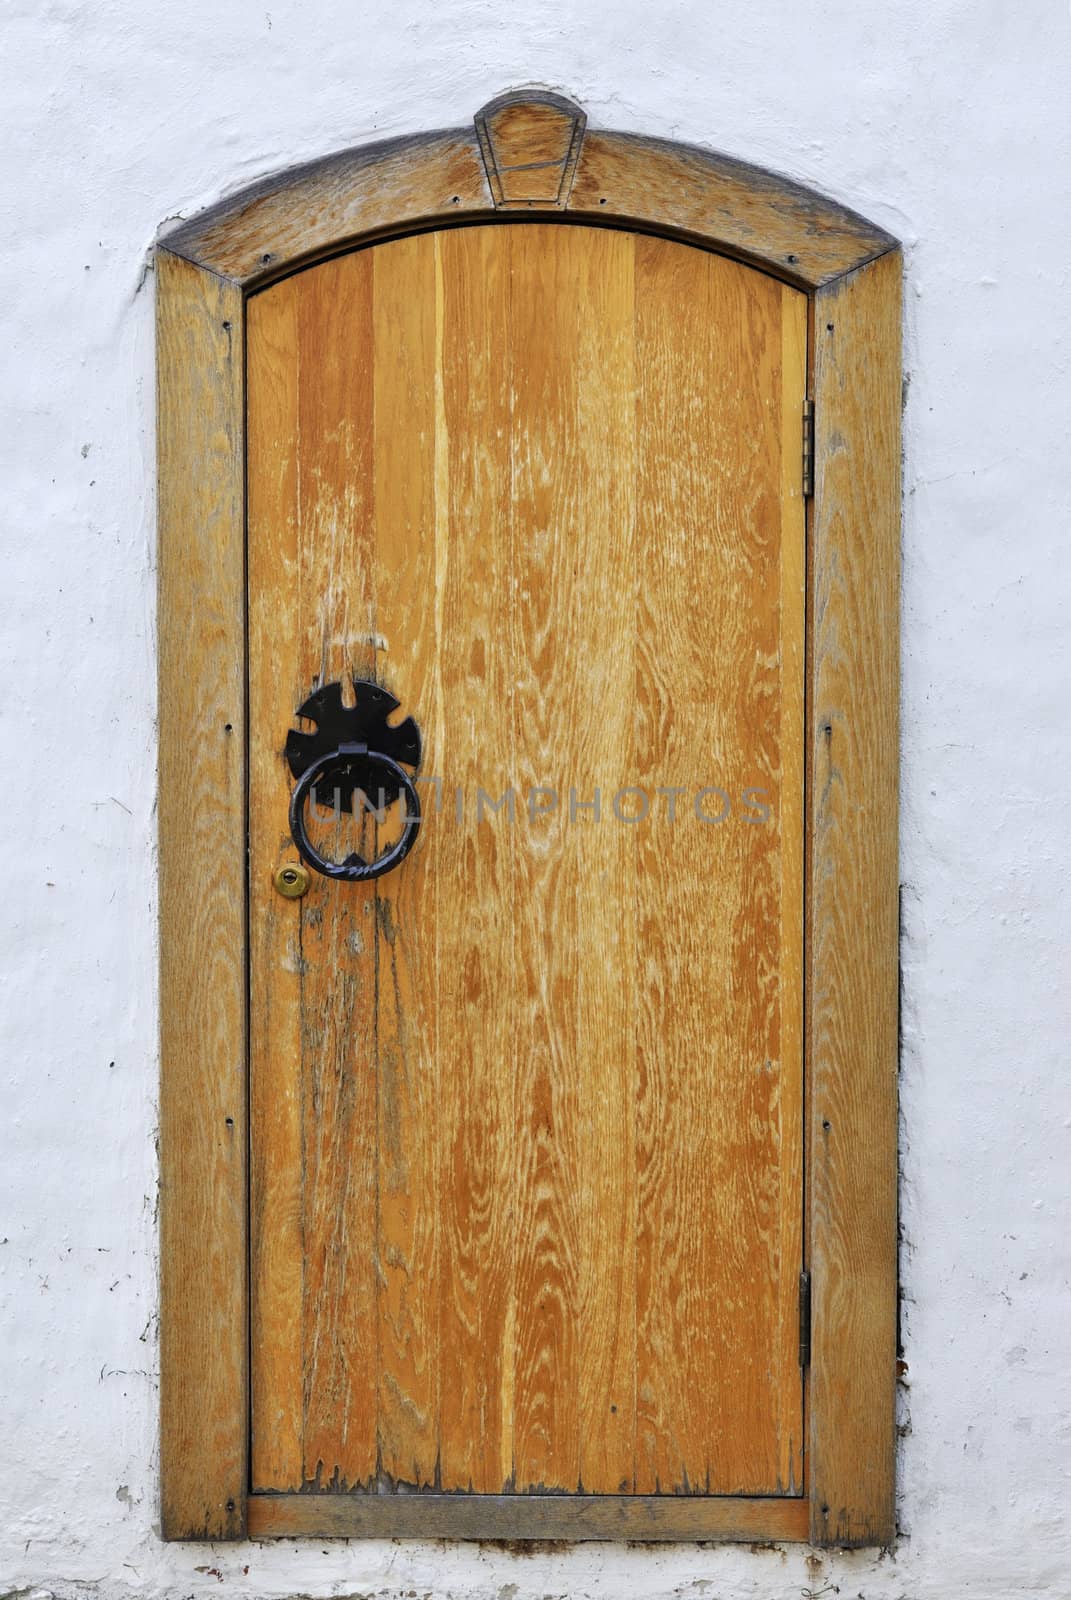 Vintage wooden door in ancient monastery of Suzdal, Russia